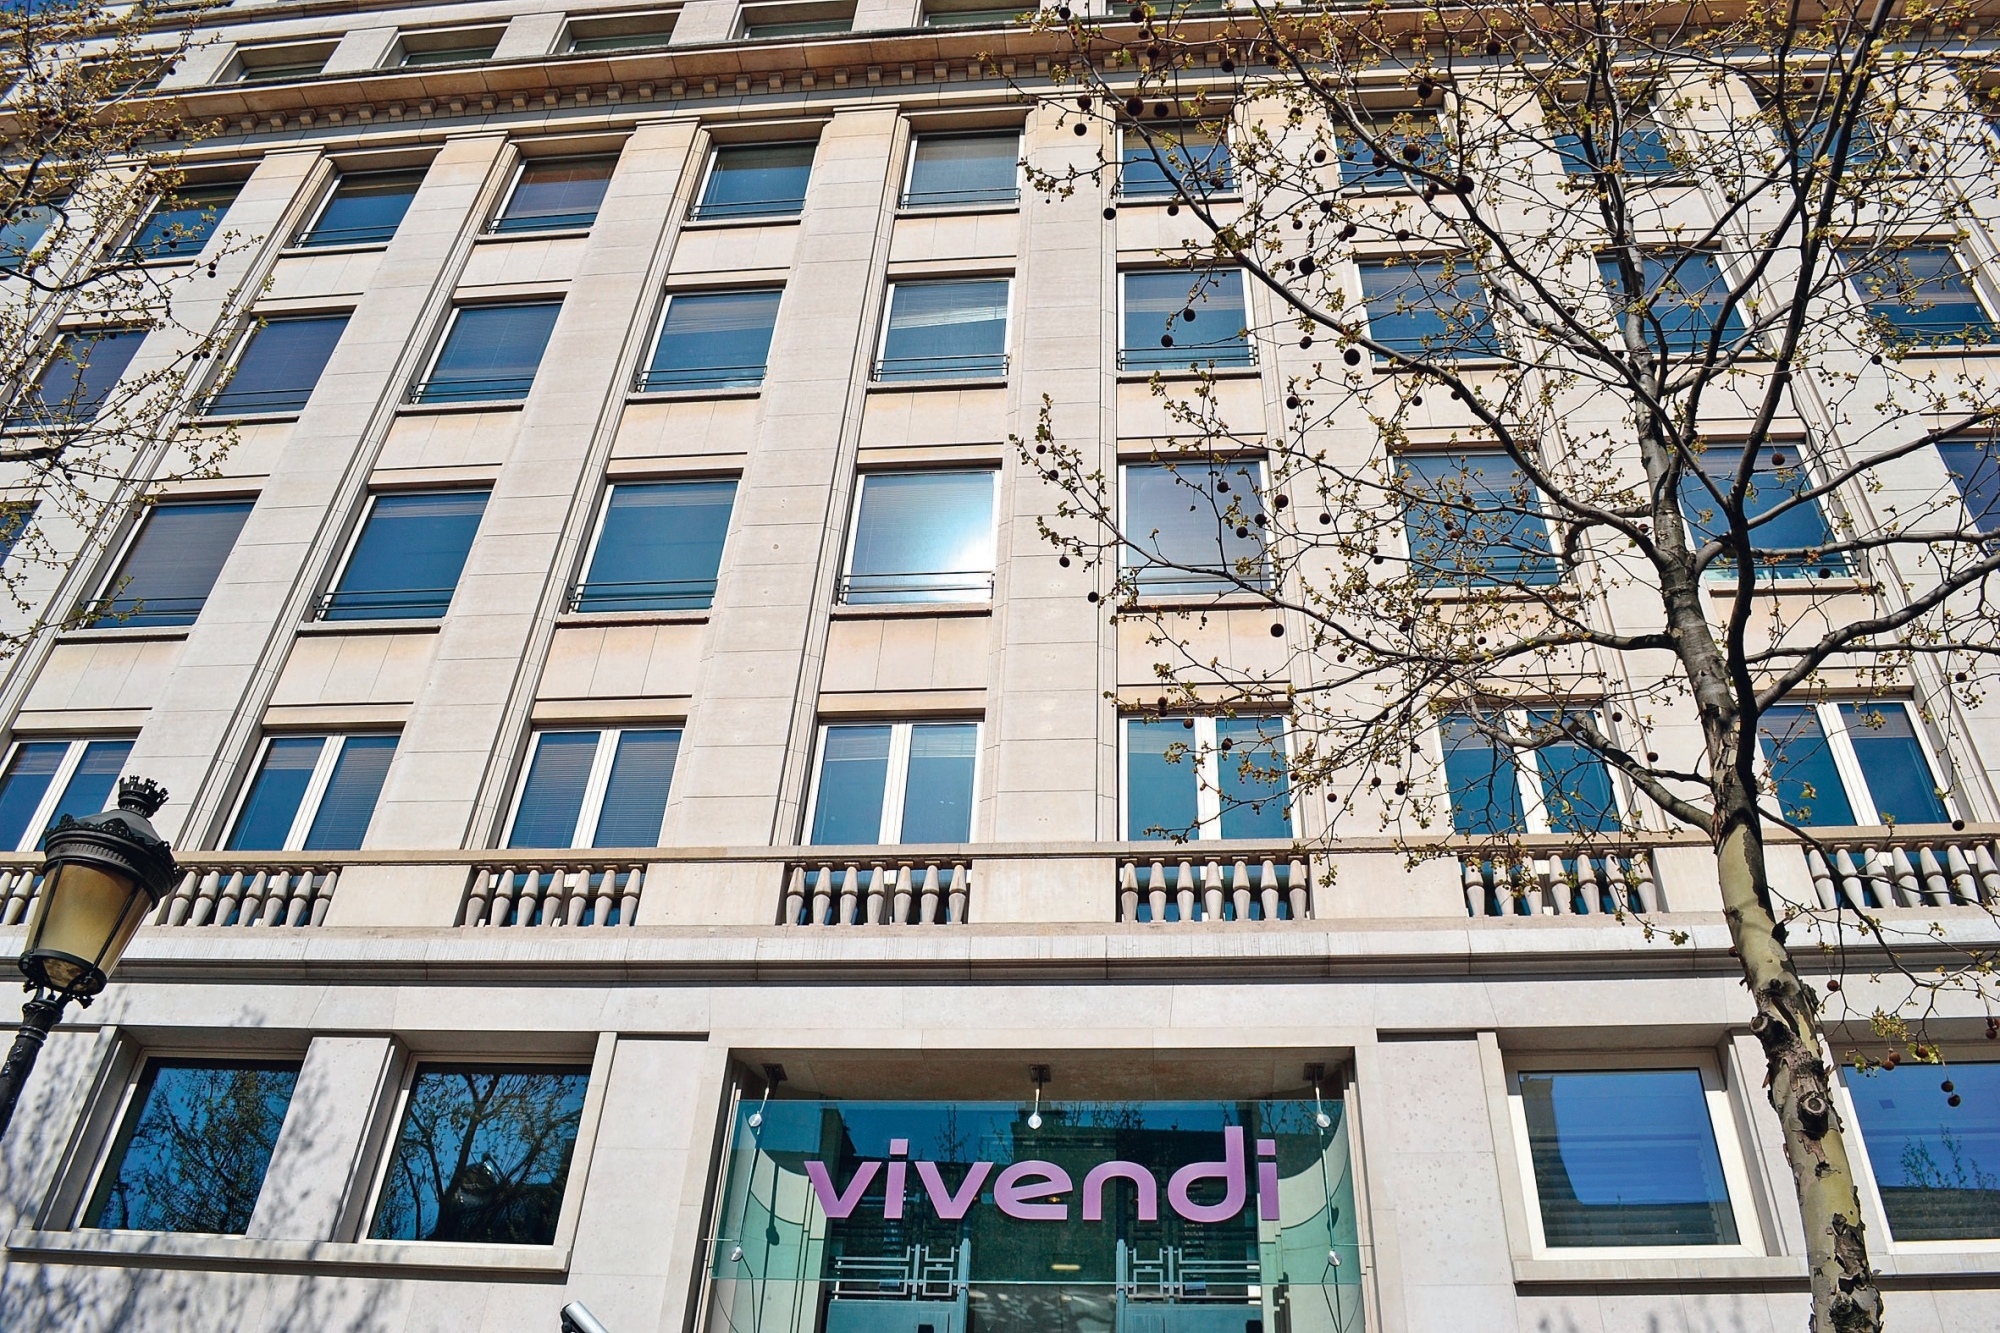 La façade de l'immeuble qui abrite le siège social du groupe Vivendi, 42 avenue de Friedland, dans le 8ème arrondissement de Paris. 103733